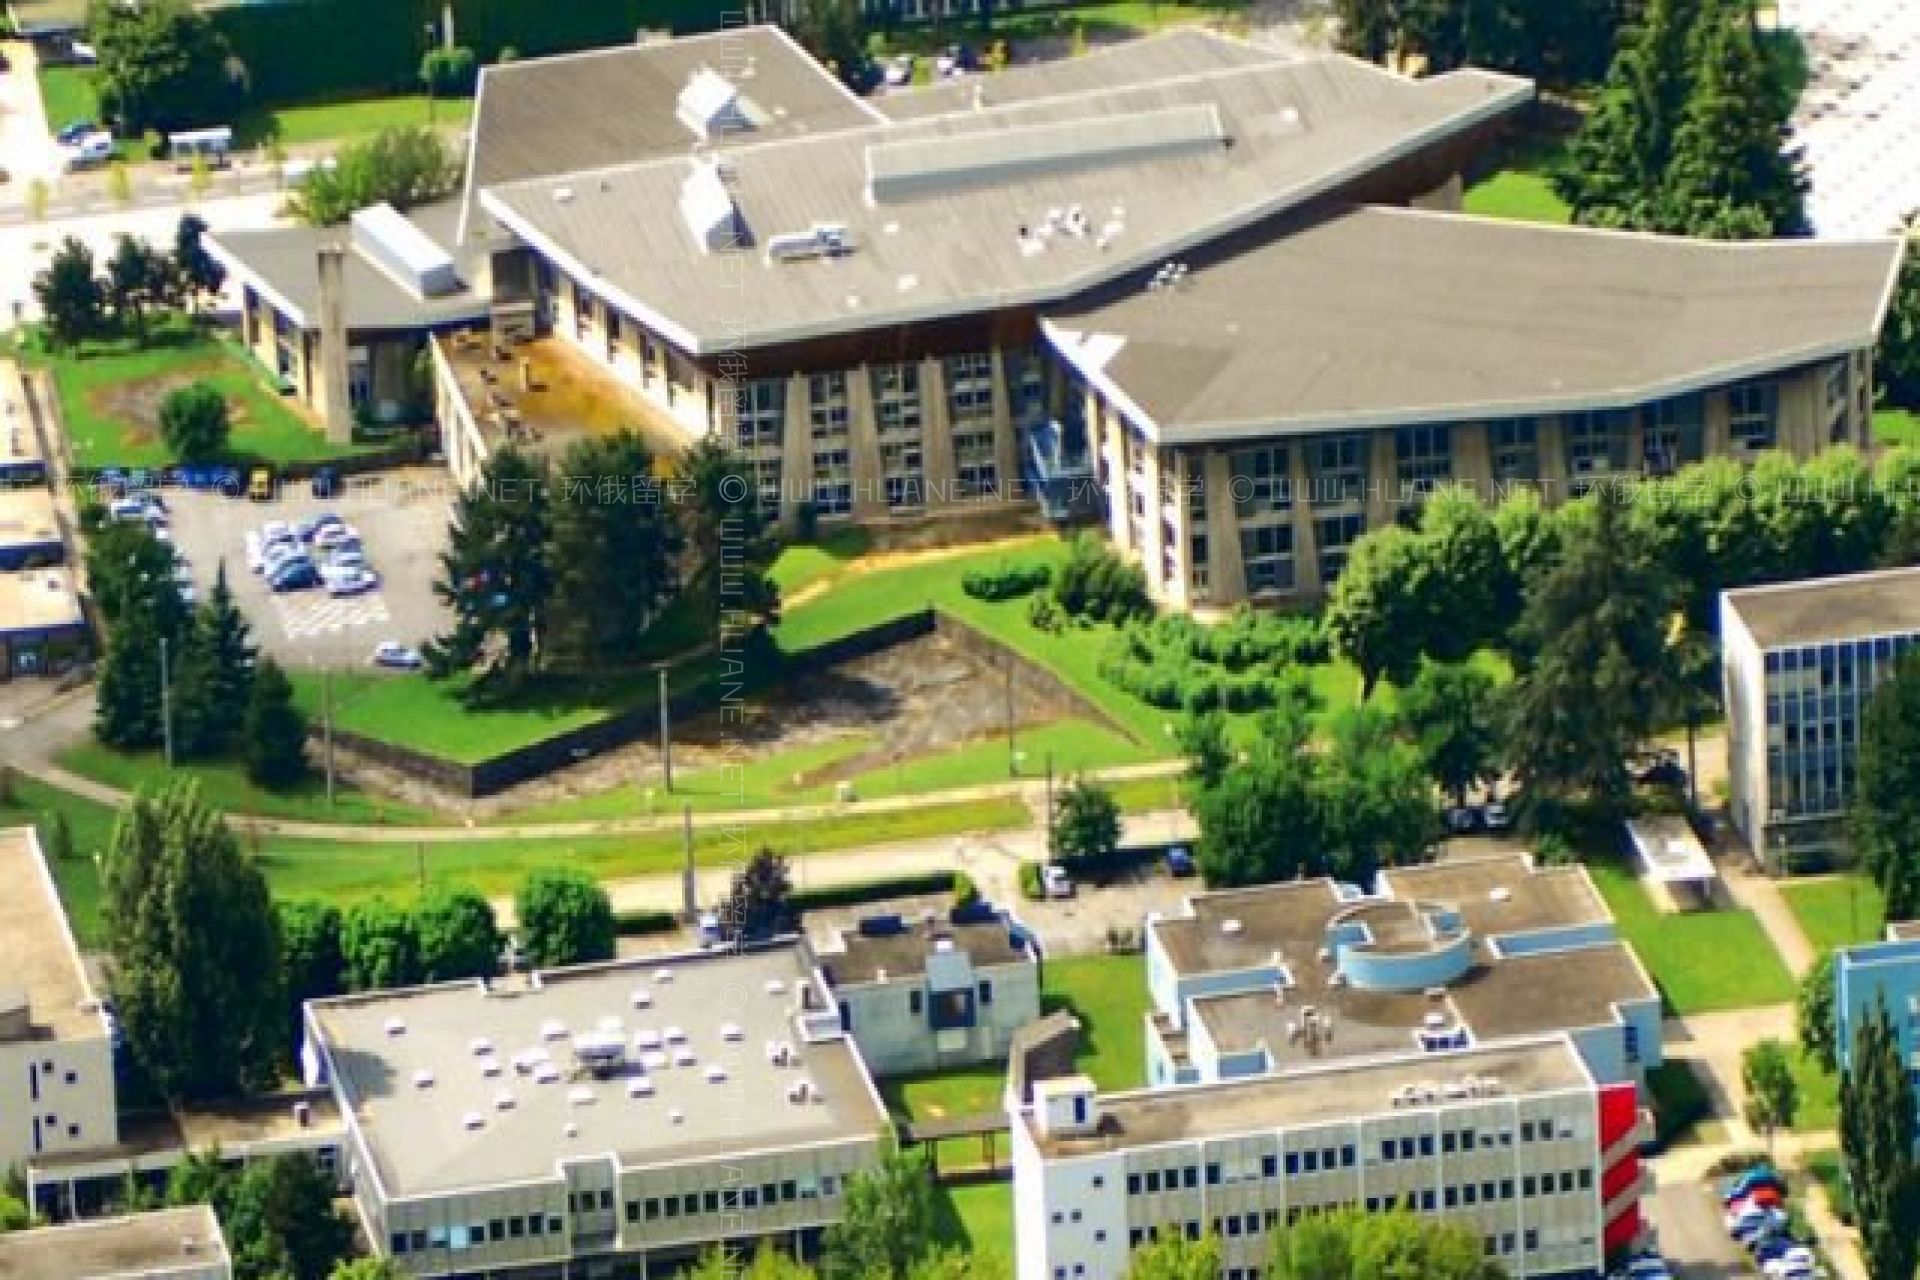 格勒诺布尔阿尔卑斯大学